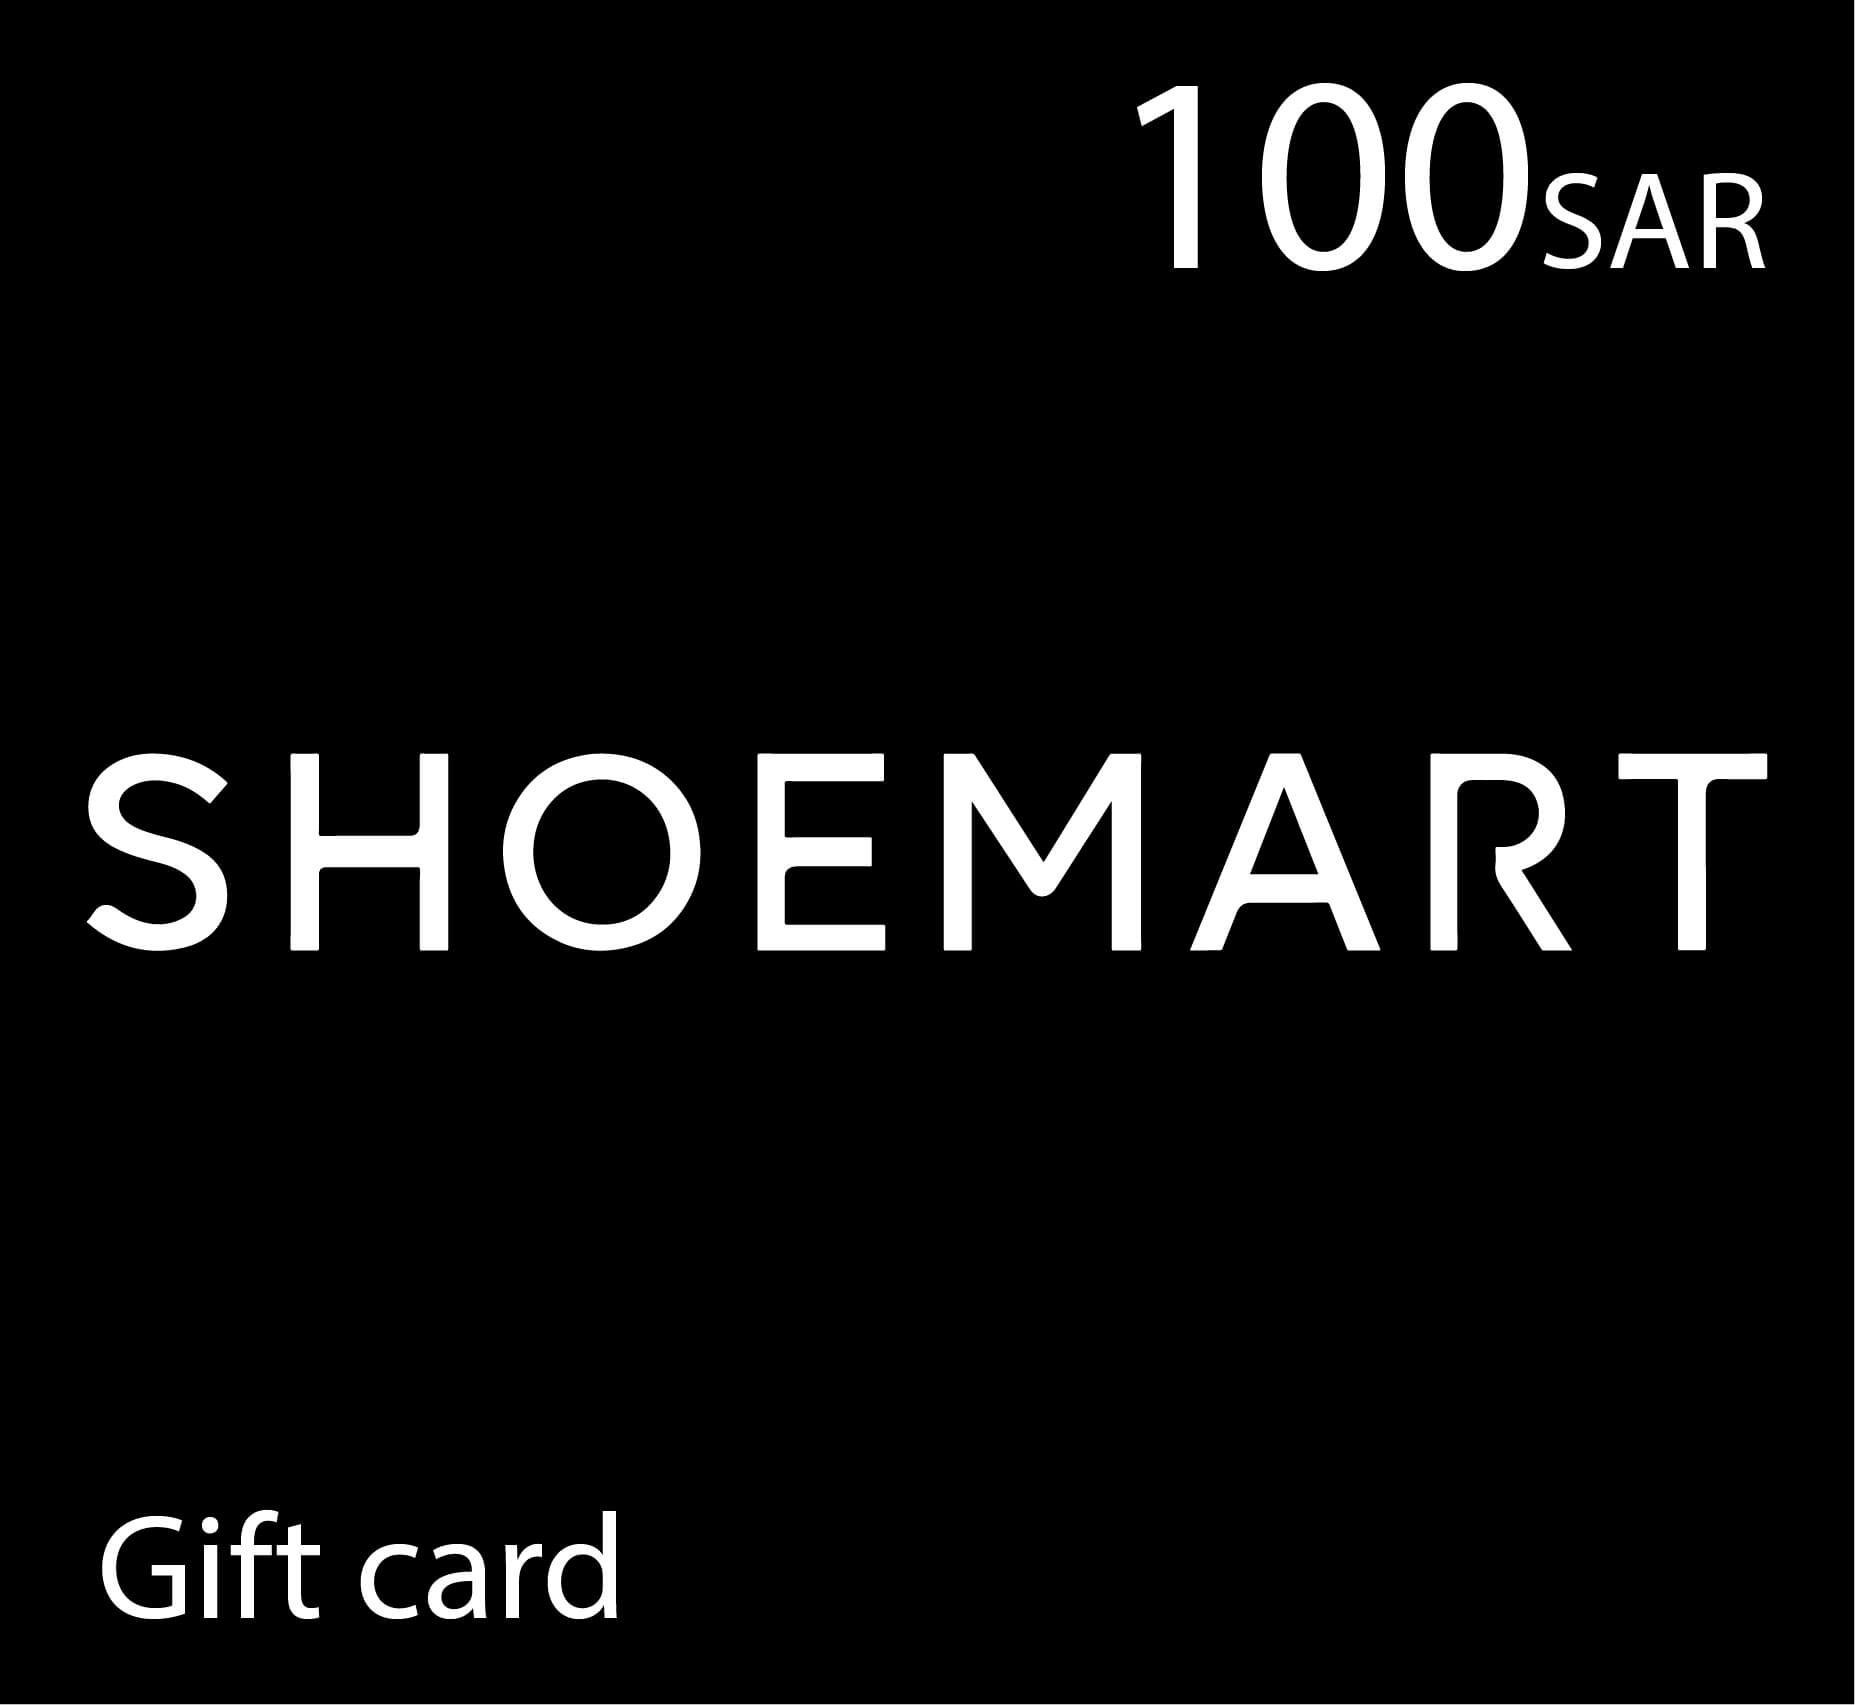 شحن بطاقة شومارت Shoemart - قسيمة شراء شو مارت - 100 ريال